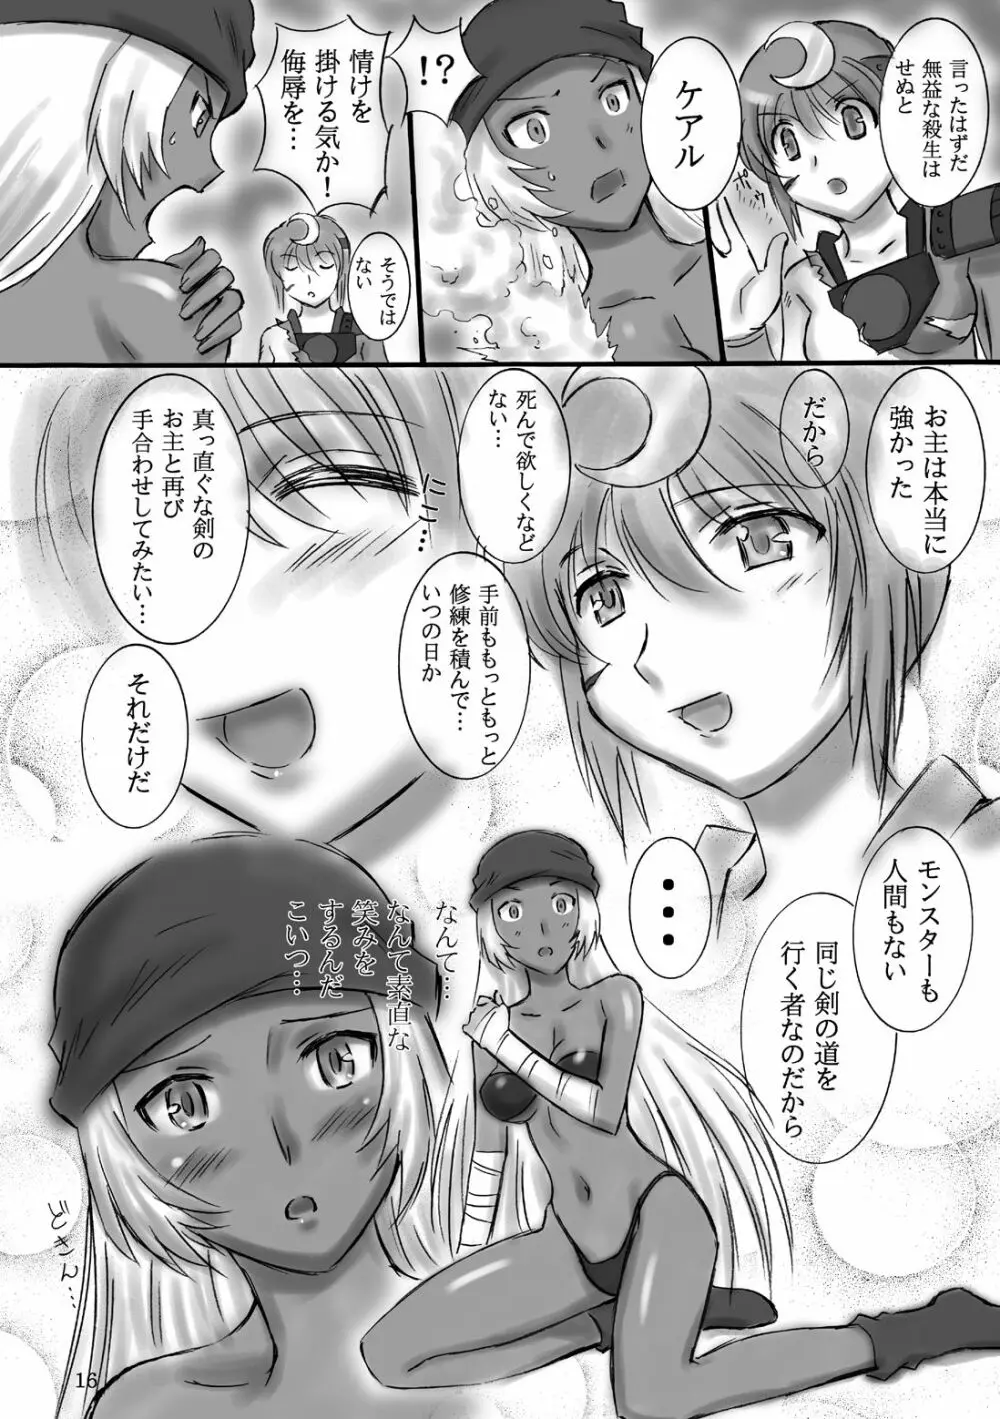 JOB☆STAR 9 16ページ